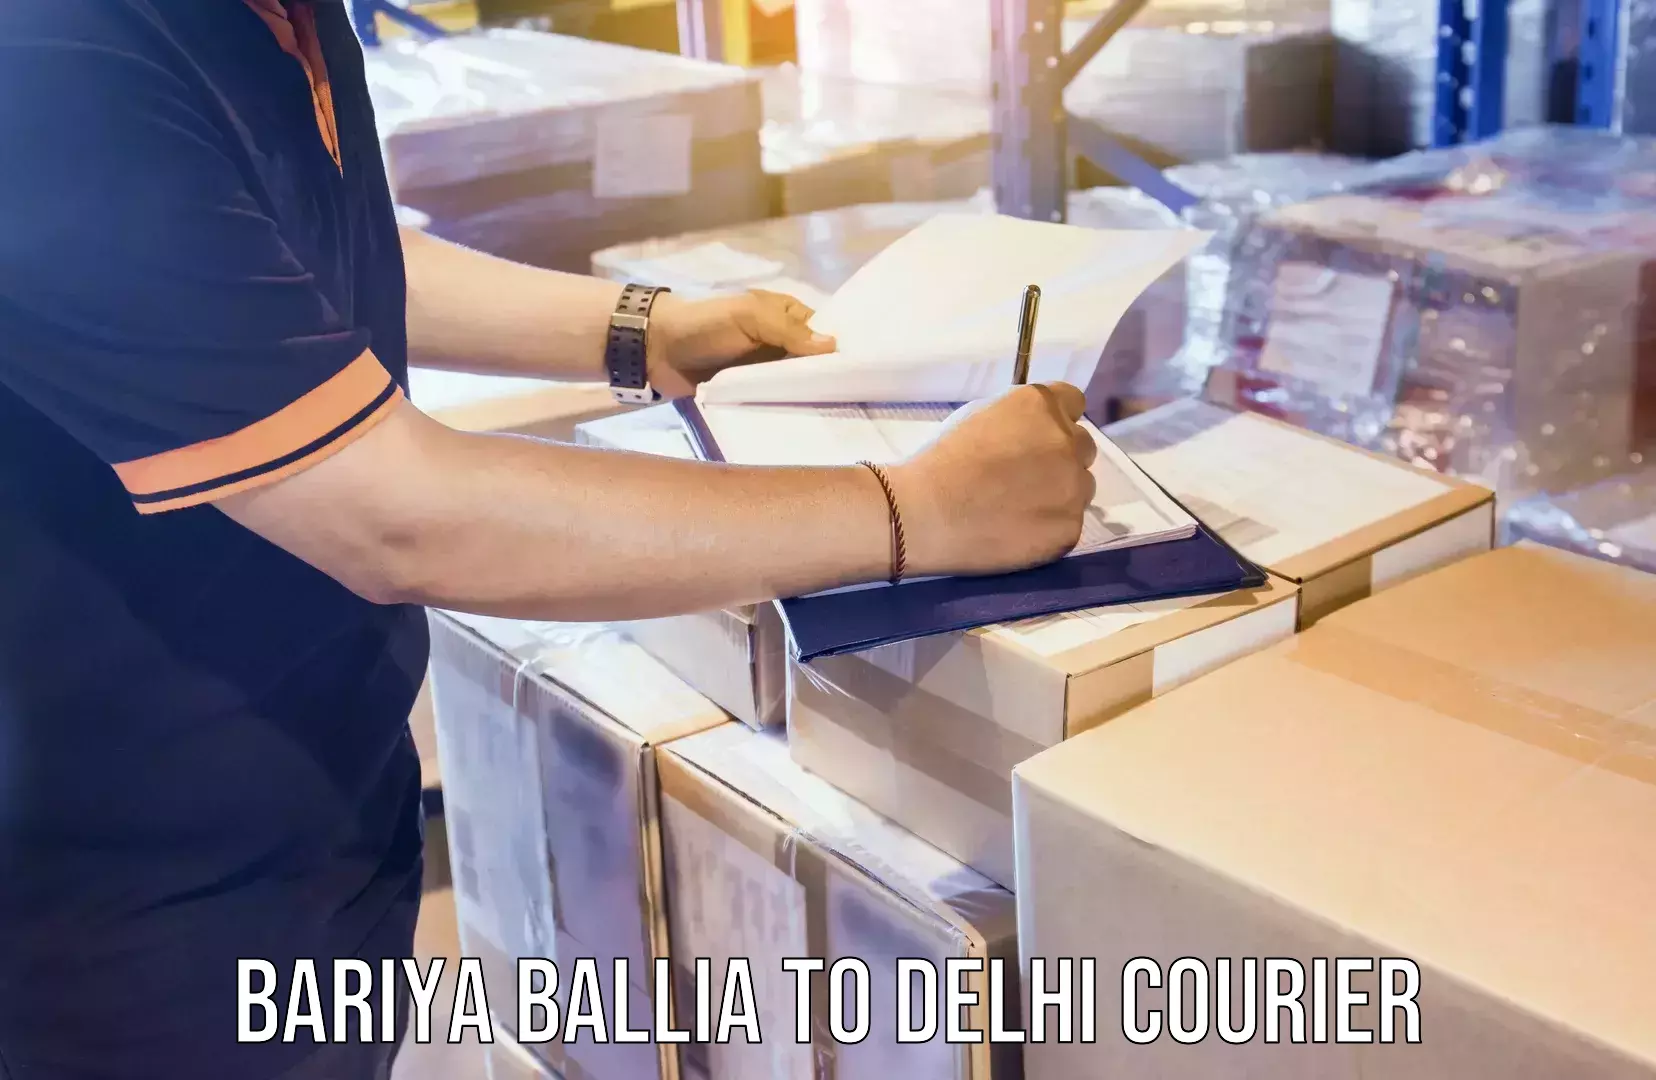 Weekend courier service Bariya Ballia to Jamia Hamdard New Delhi